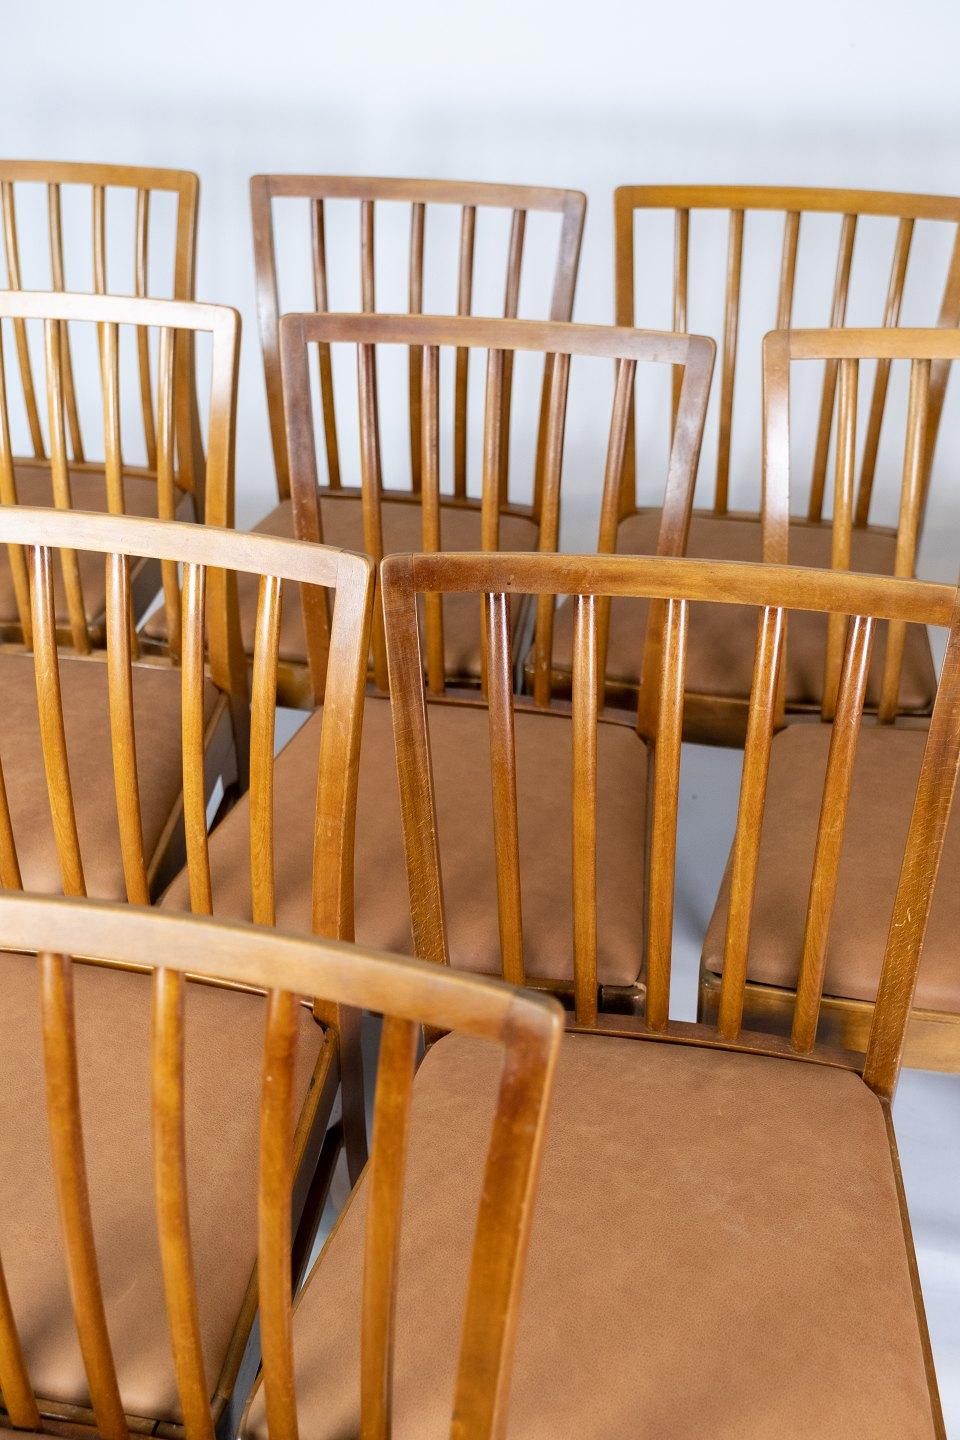 Satz von 10 Esszimmerstühlen aus hellem Holz und gepolstert mit cognacfarbenem Leder aus den 1940er Jahren. Die Stühle sind in hervorragendem Vintage-Zustand.
 